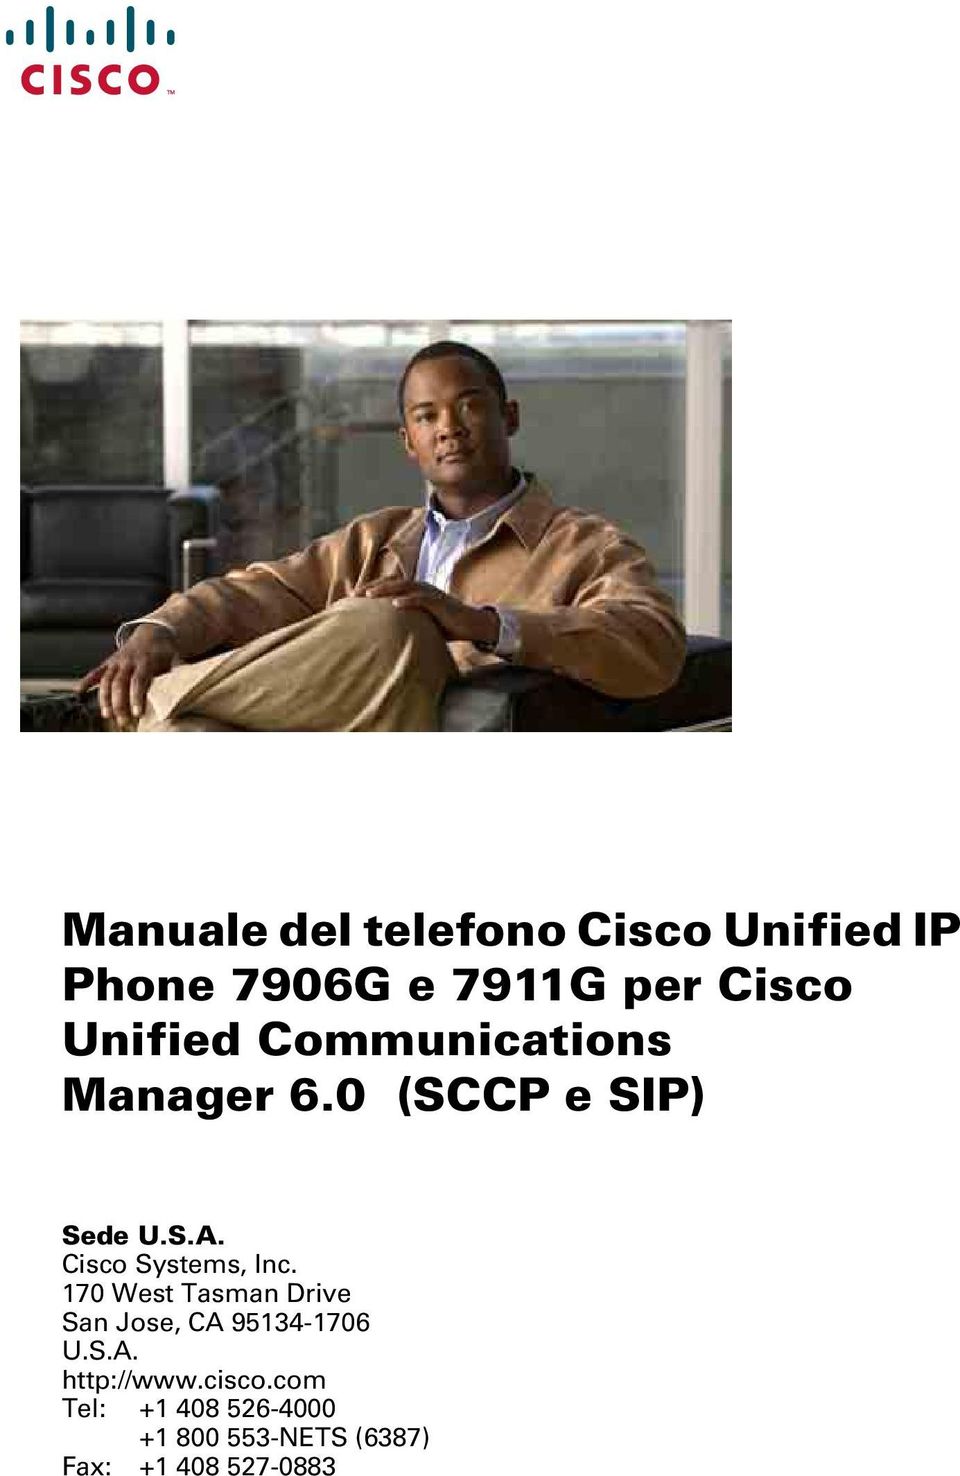 Cisco Systems, Inc. 170 West Tasman Drive San Jose, CA 95134-1706 U.S.A. http://www.